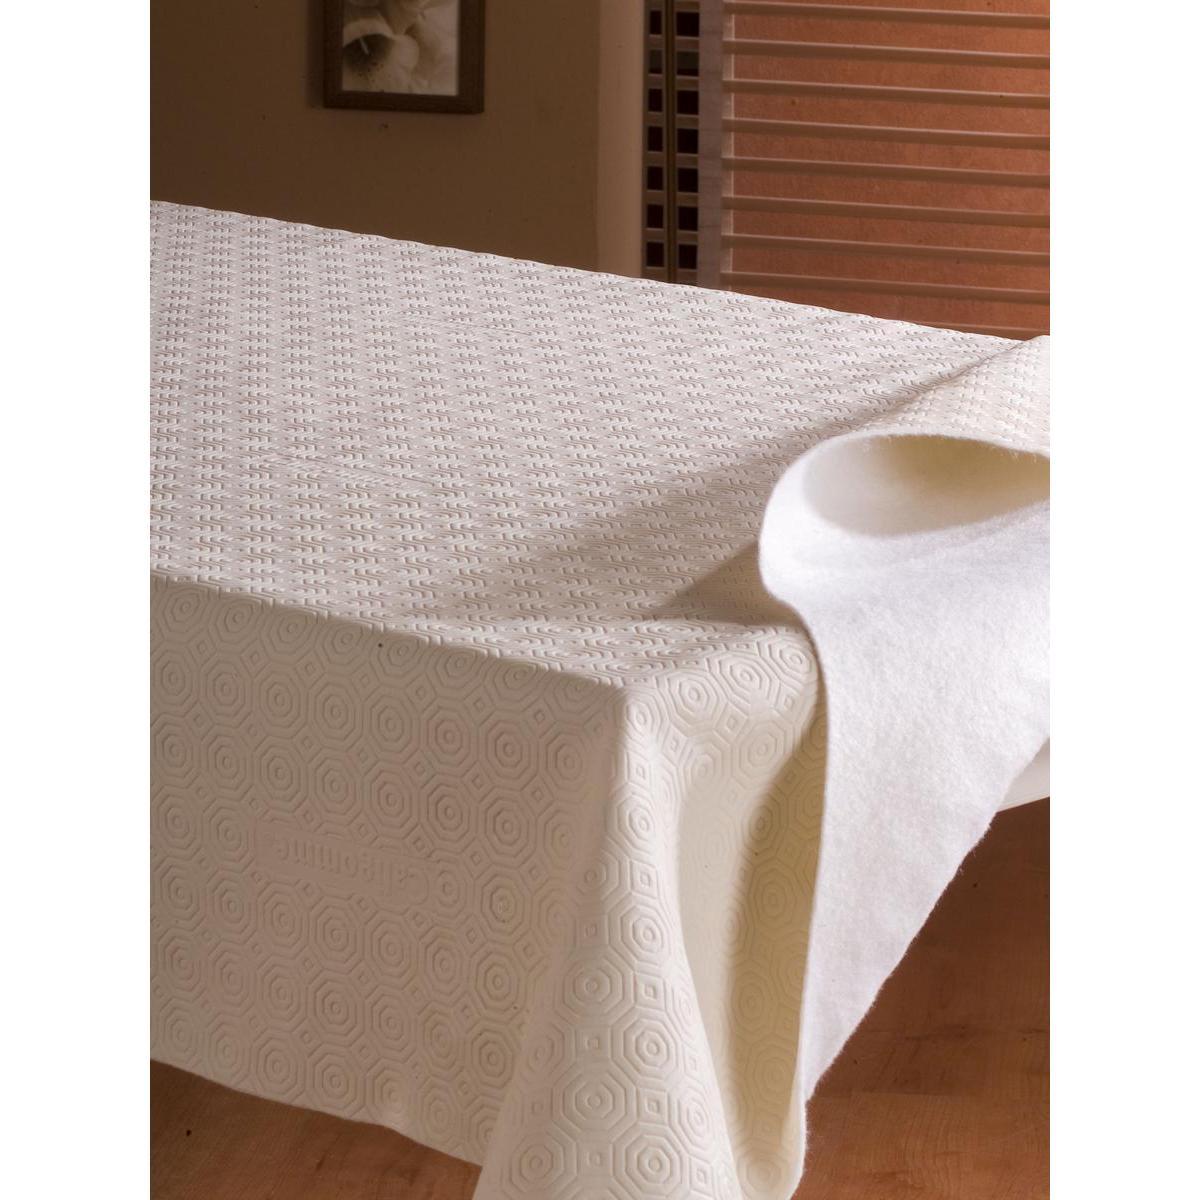 Protège table rectangulaire - PVC et polyester - 135 x 250 cm - Blanc